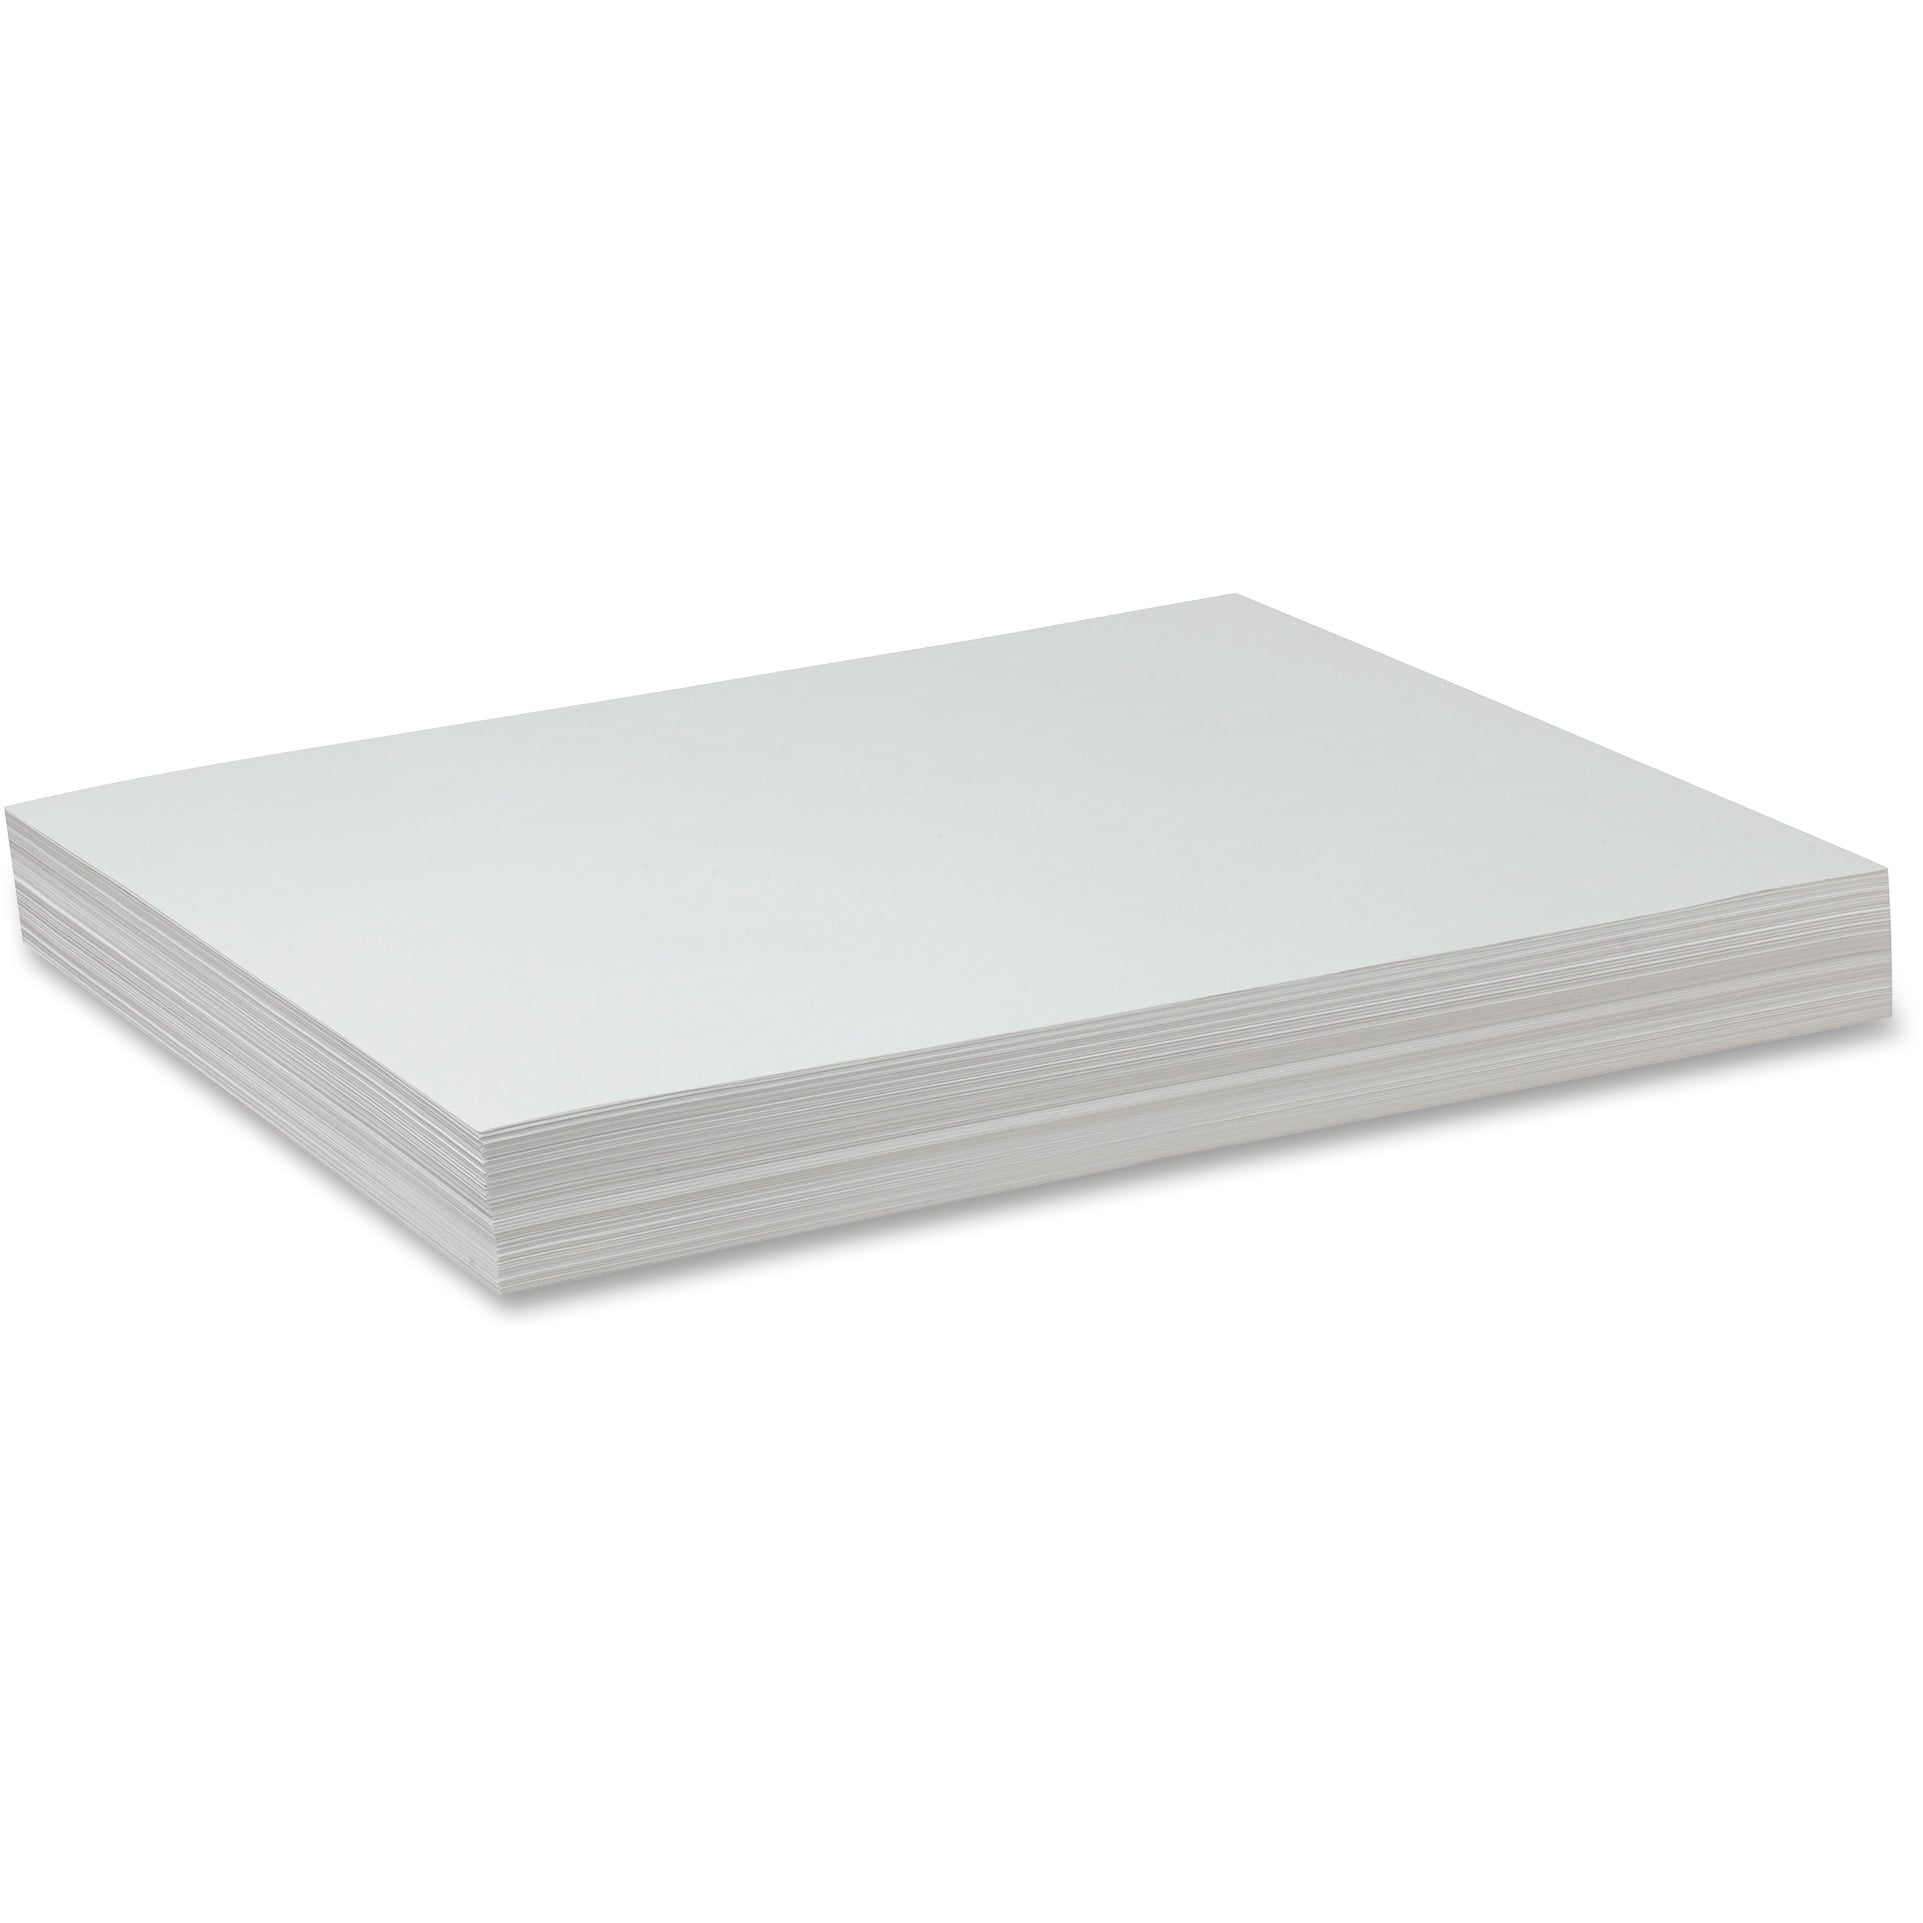 Colorations® White Sulphite Paper - 9 x 12, 50 lb.